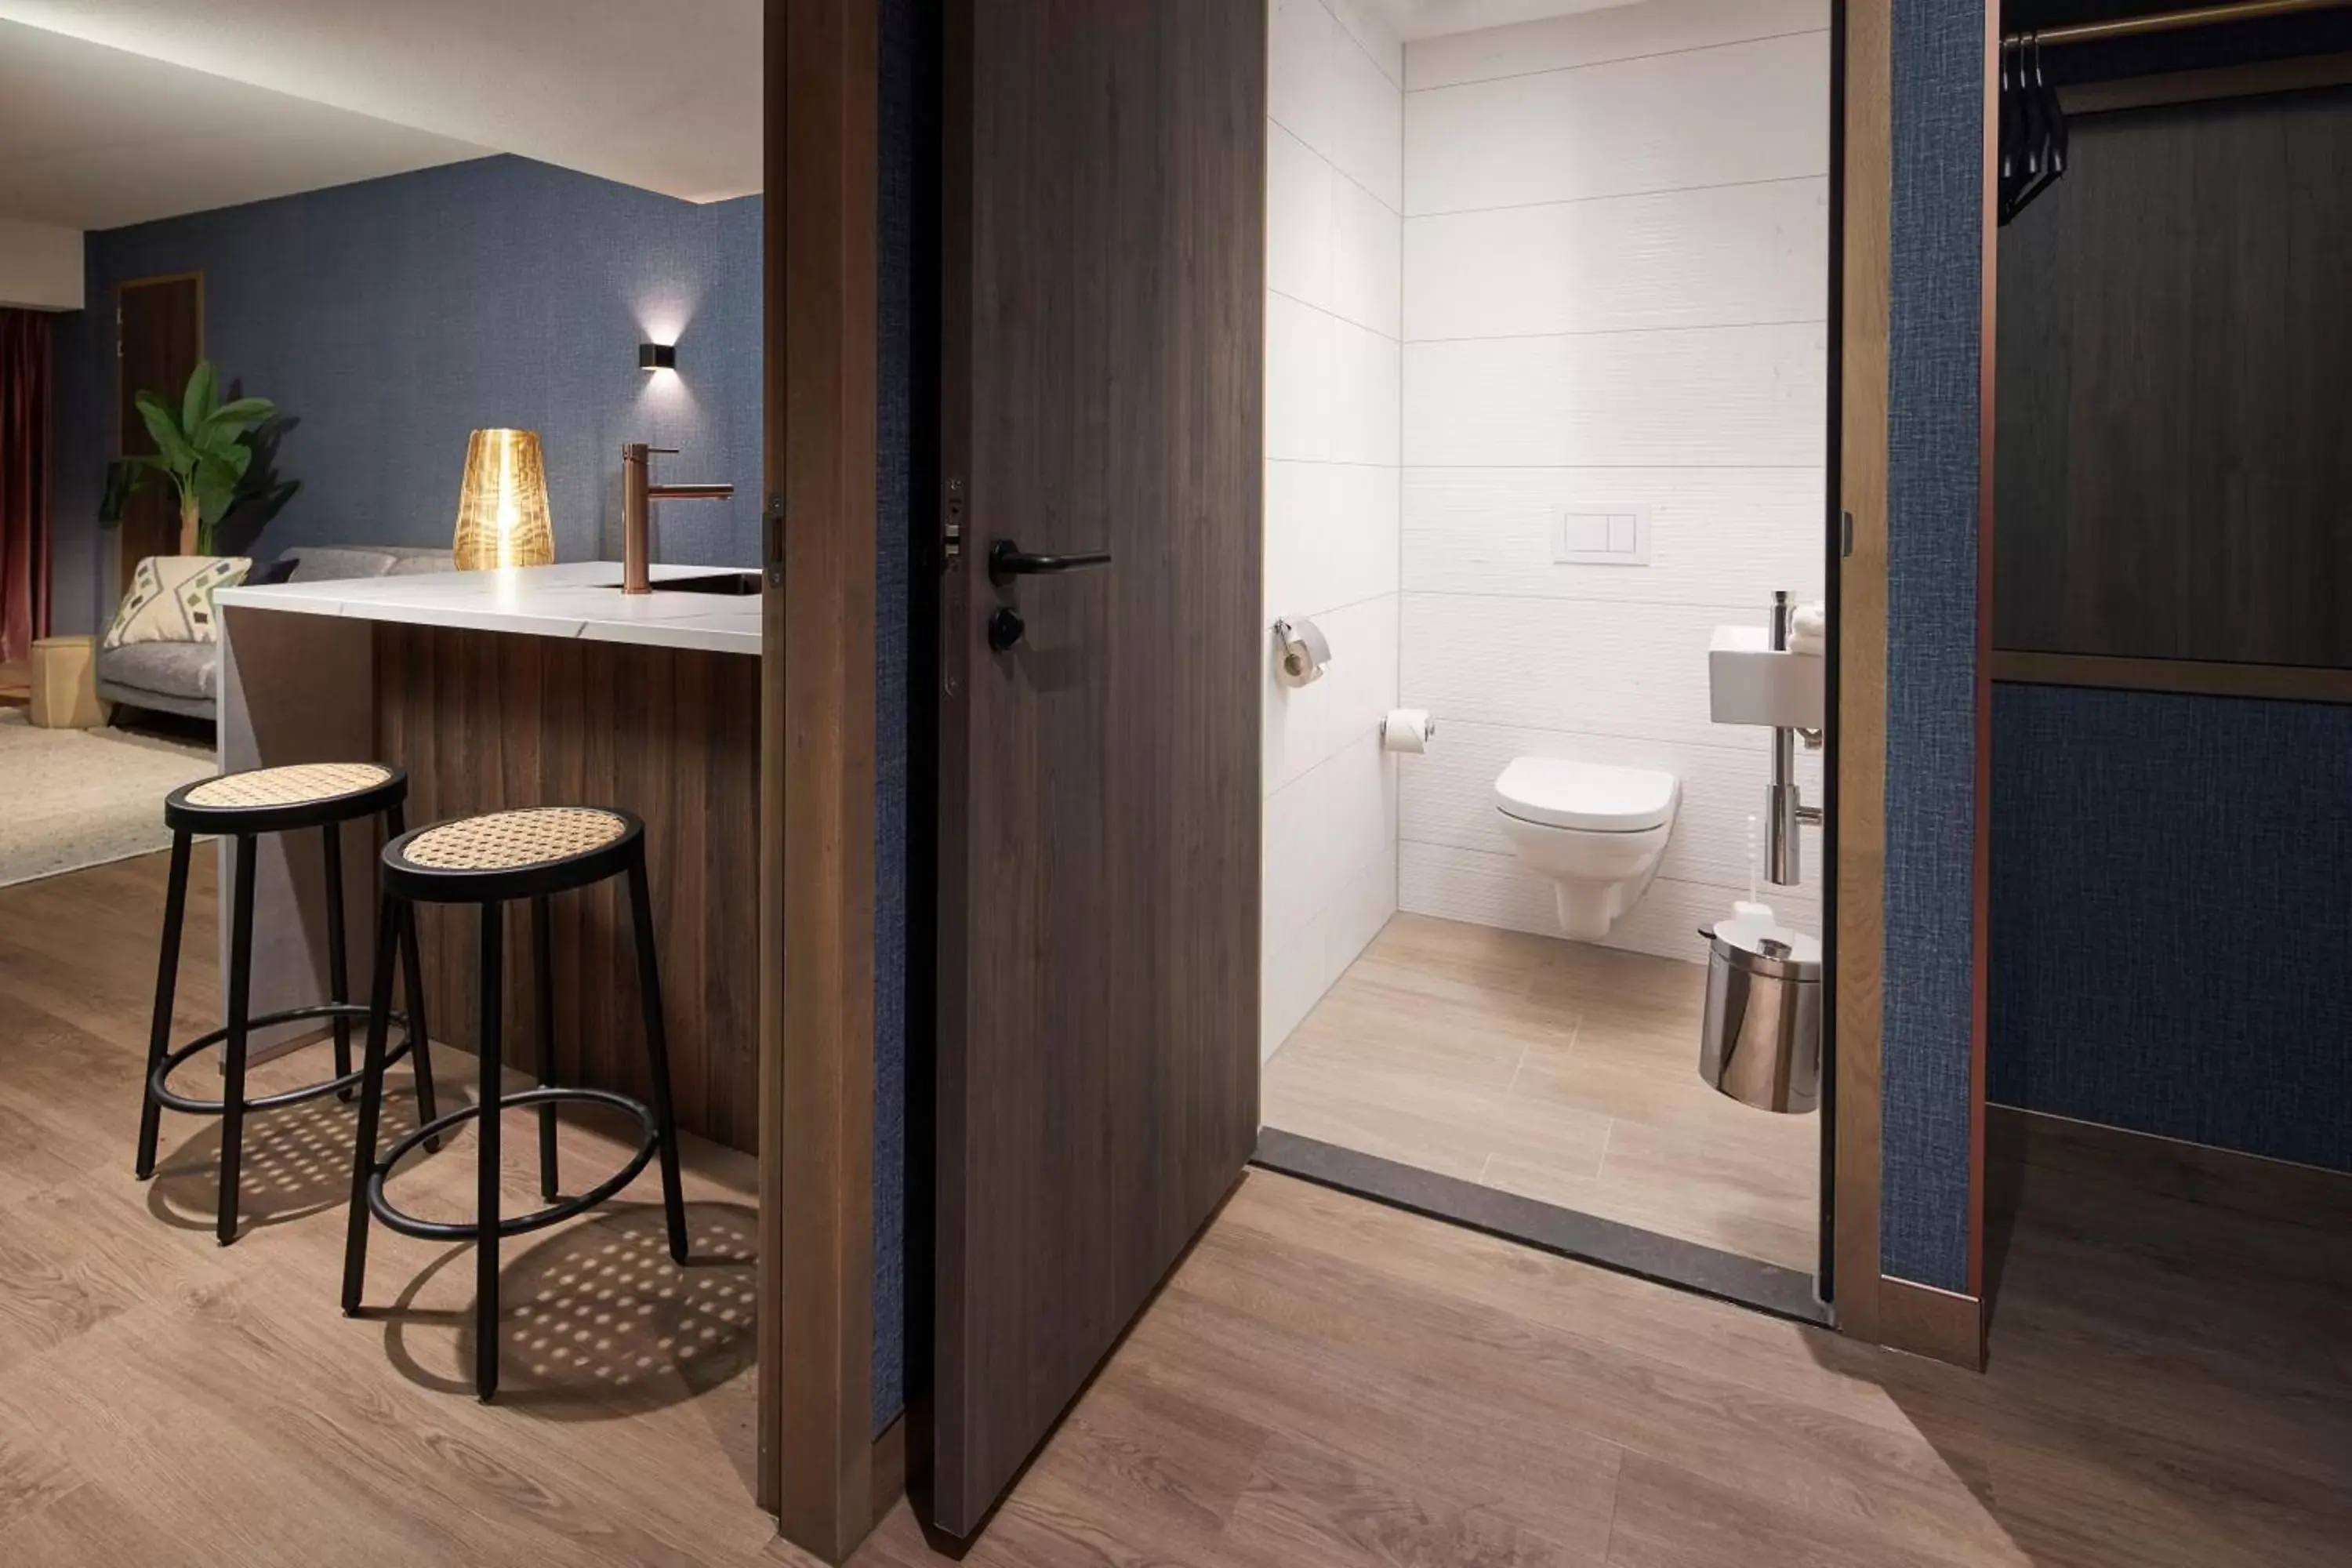 Toilet, Bathroom in Van der Valk Hotel Haarlem